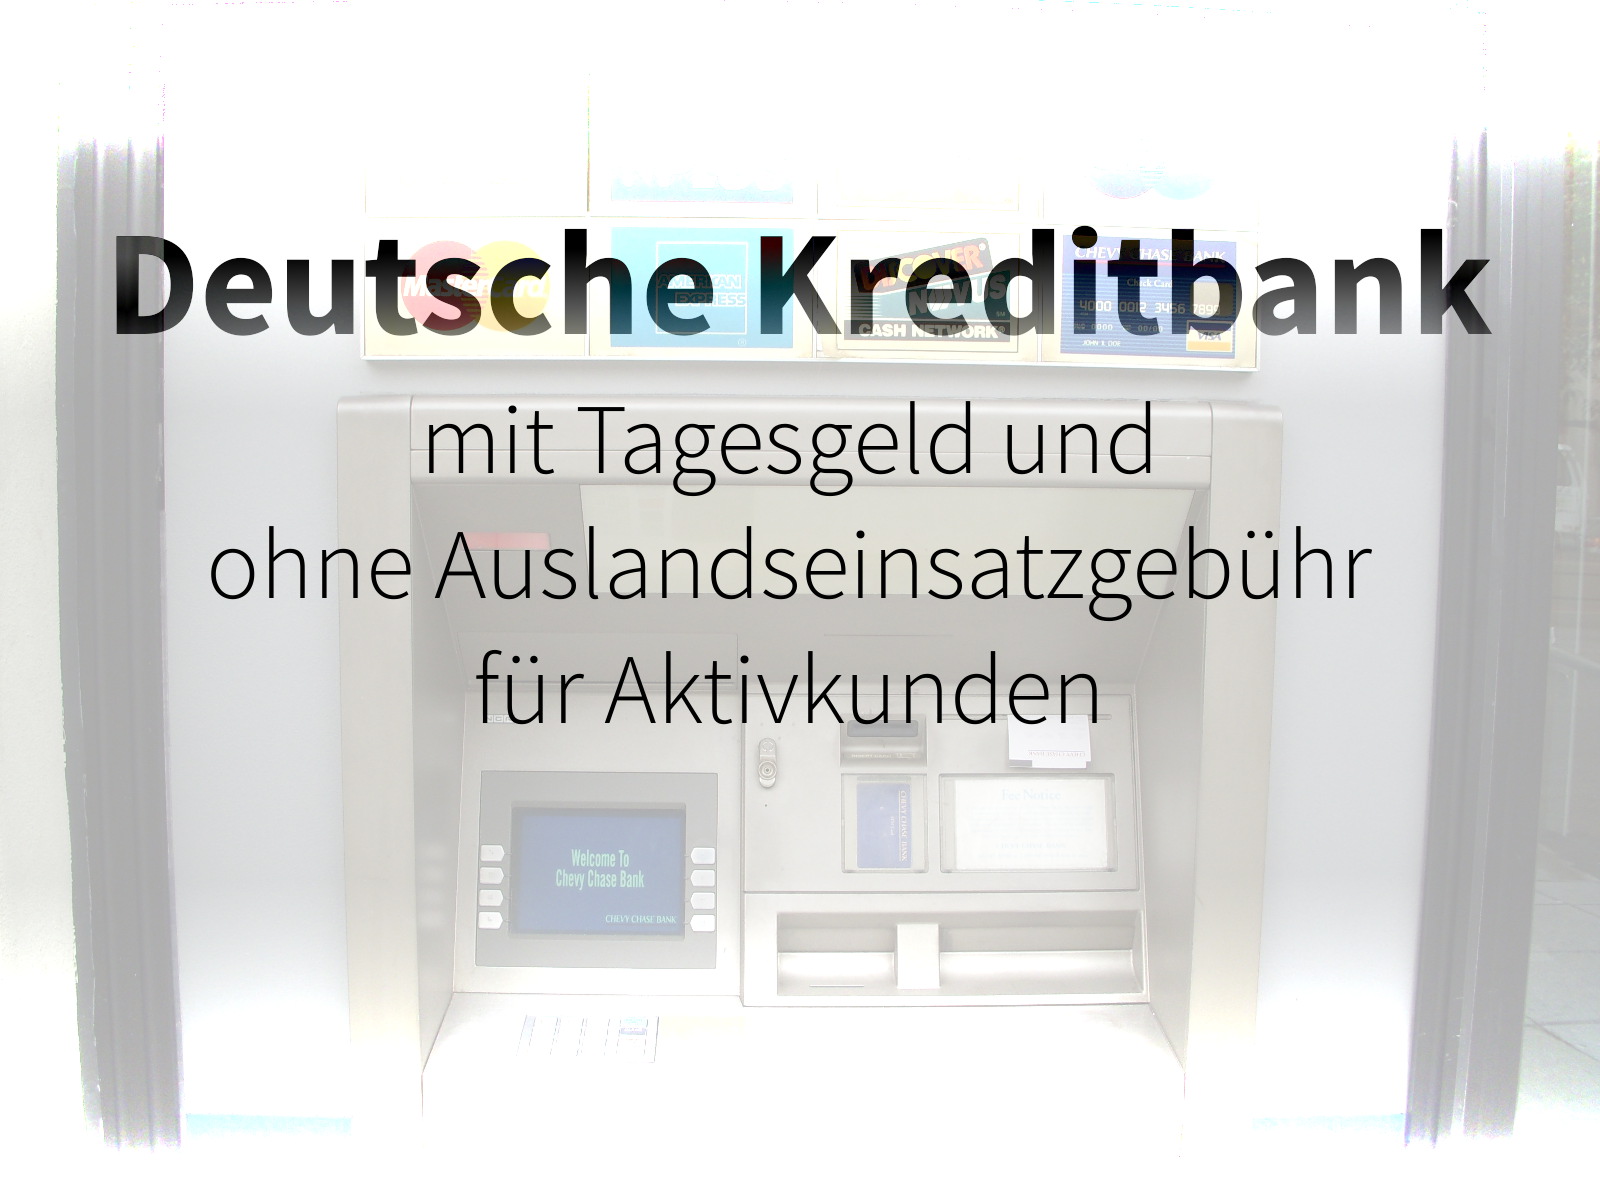 Deutsche Kreditbank mit neuen Konditionen